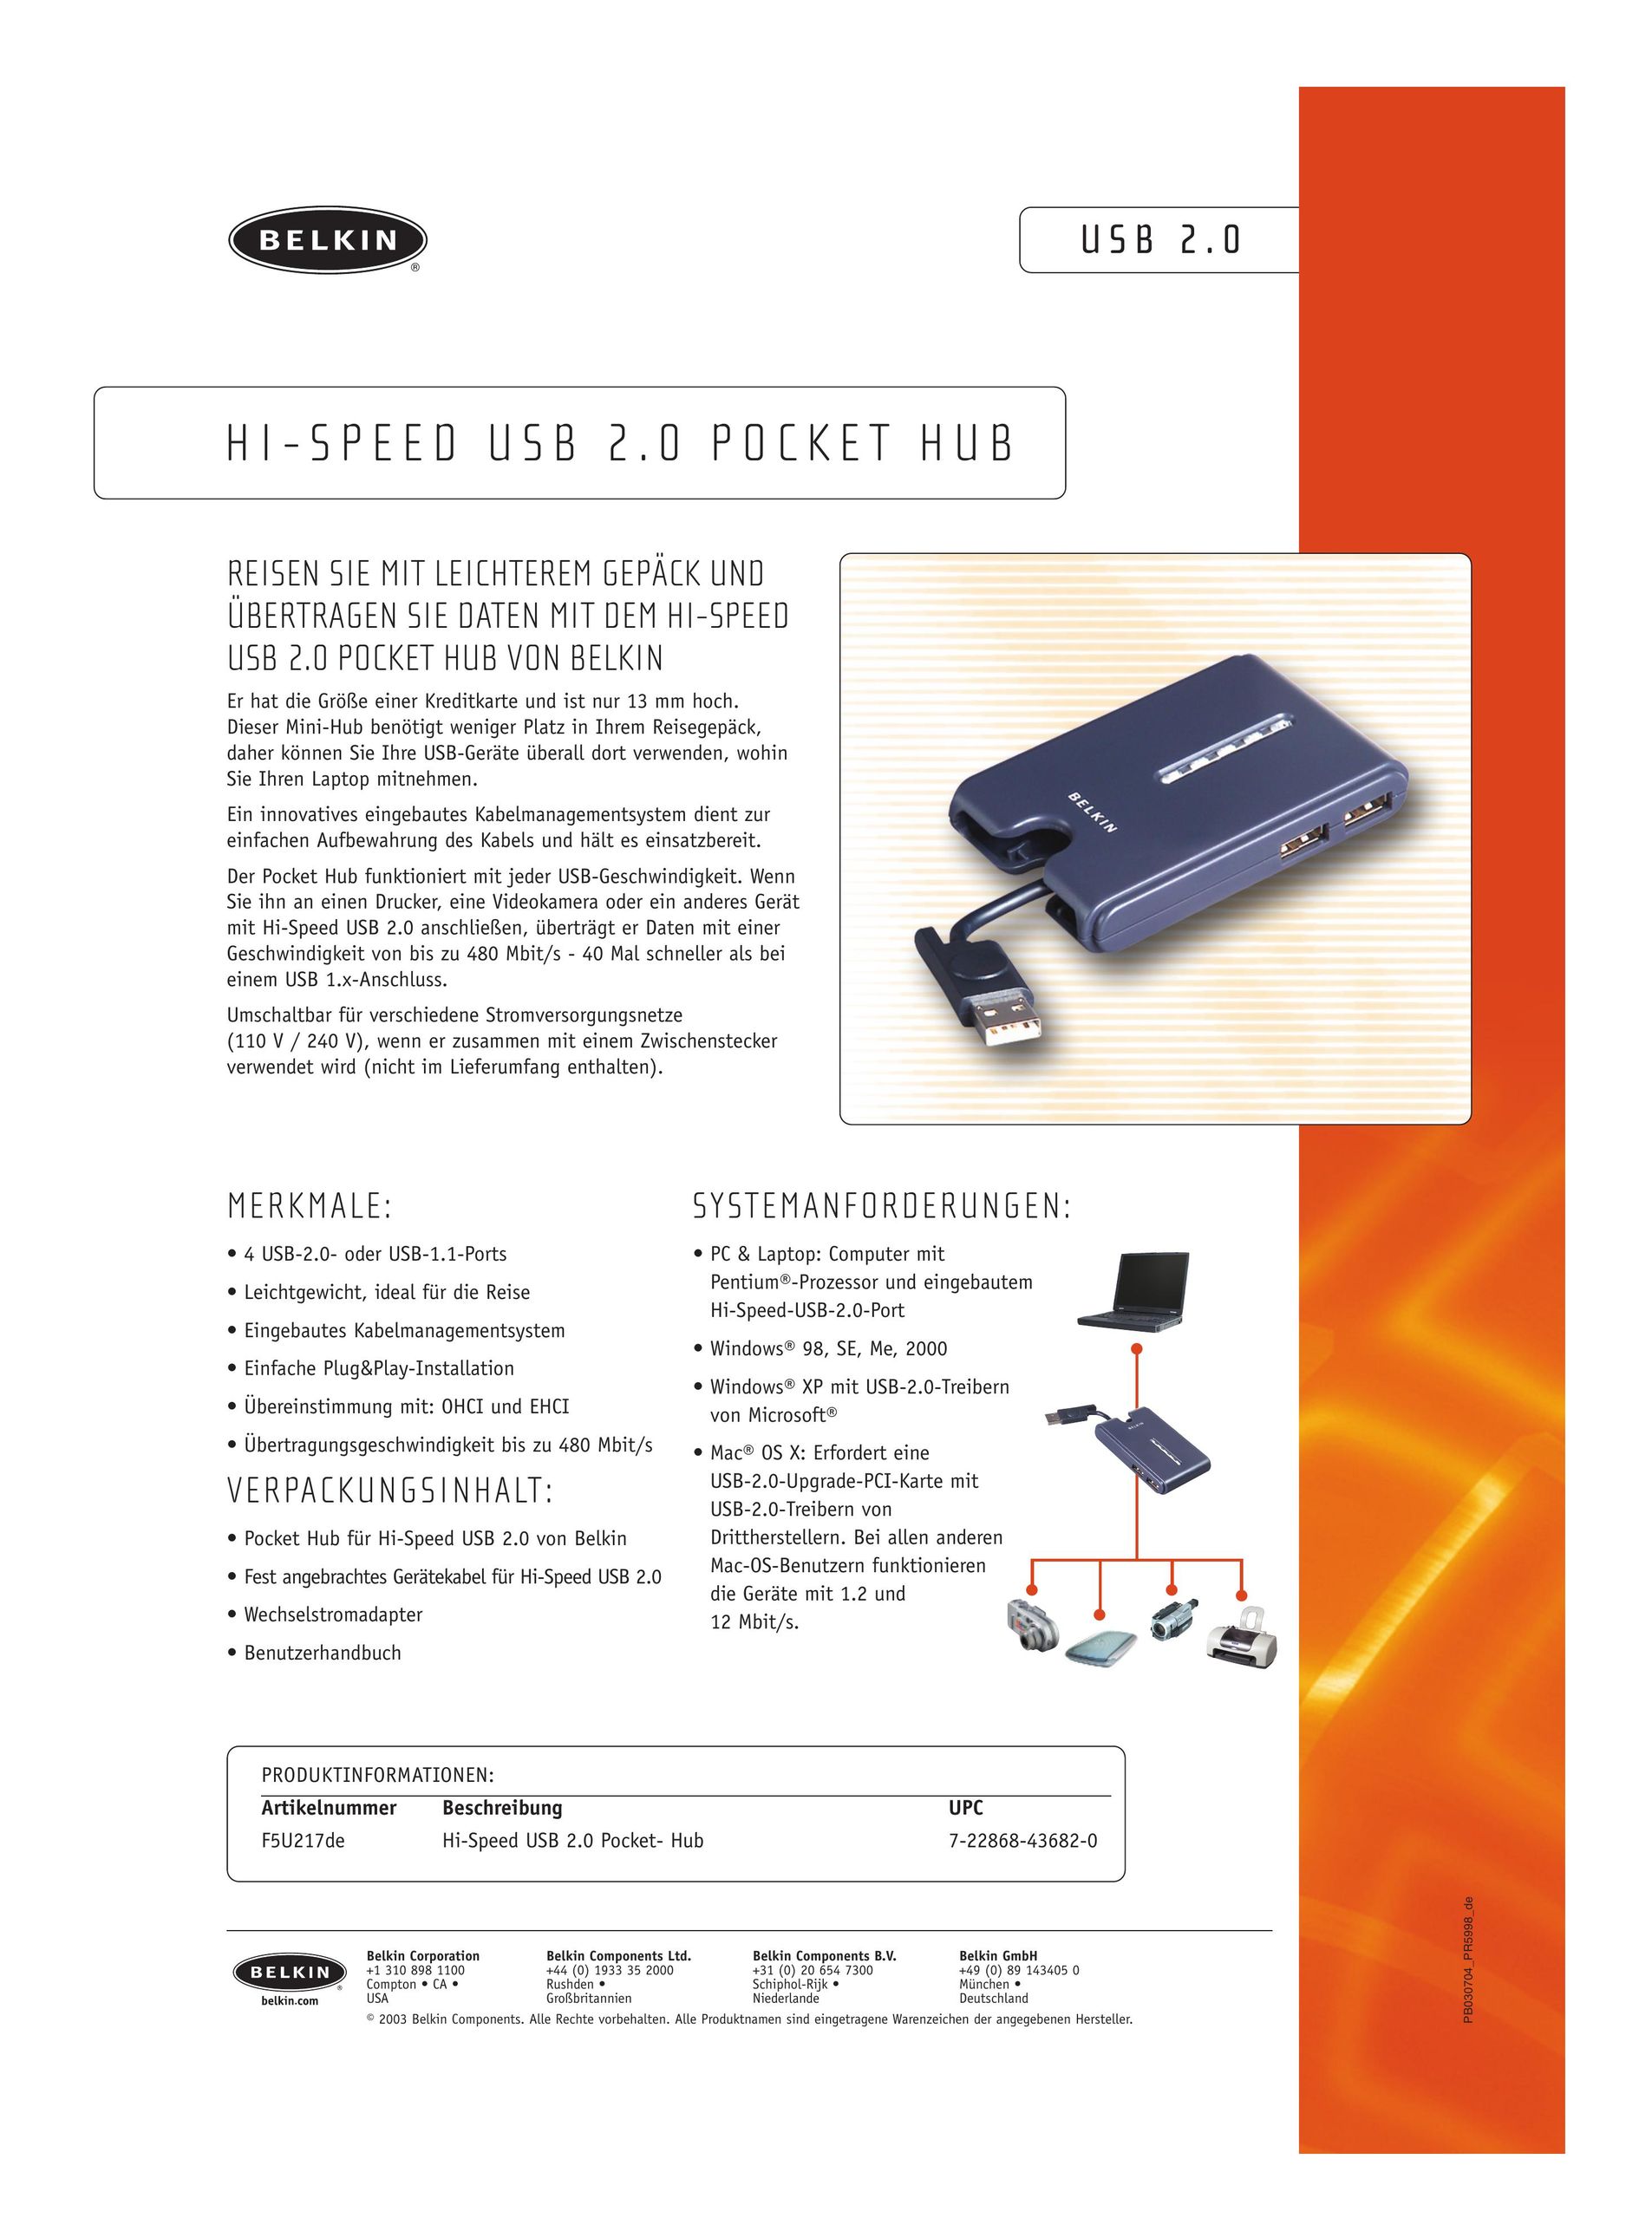 Belkin USB 2.0 pocket hub Wireless Office Headset User Manual